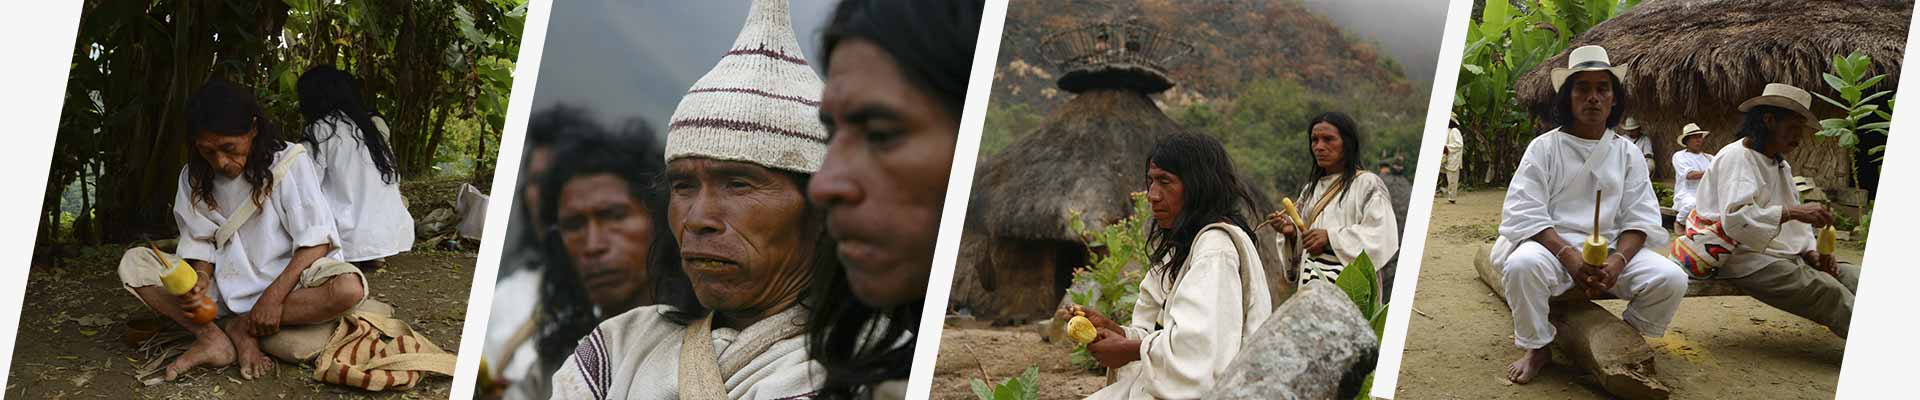 indigenous people of the sierra nevada de santa marta